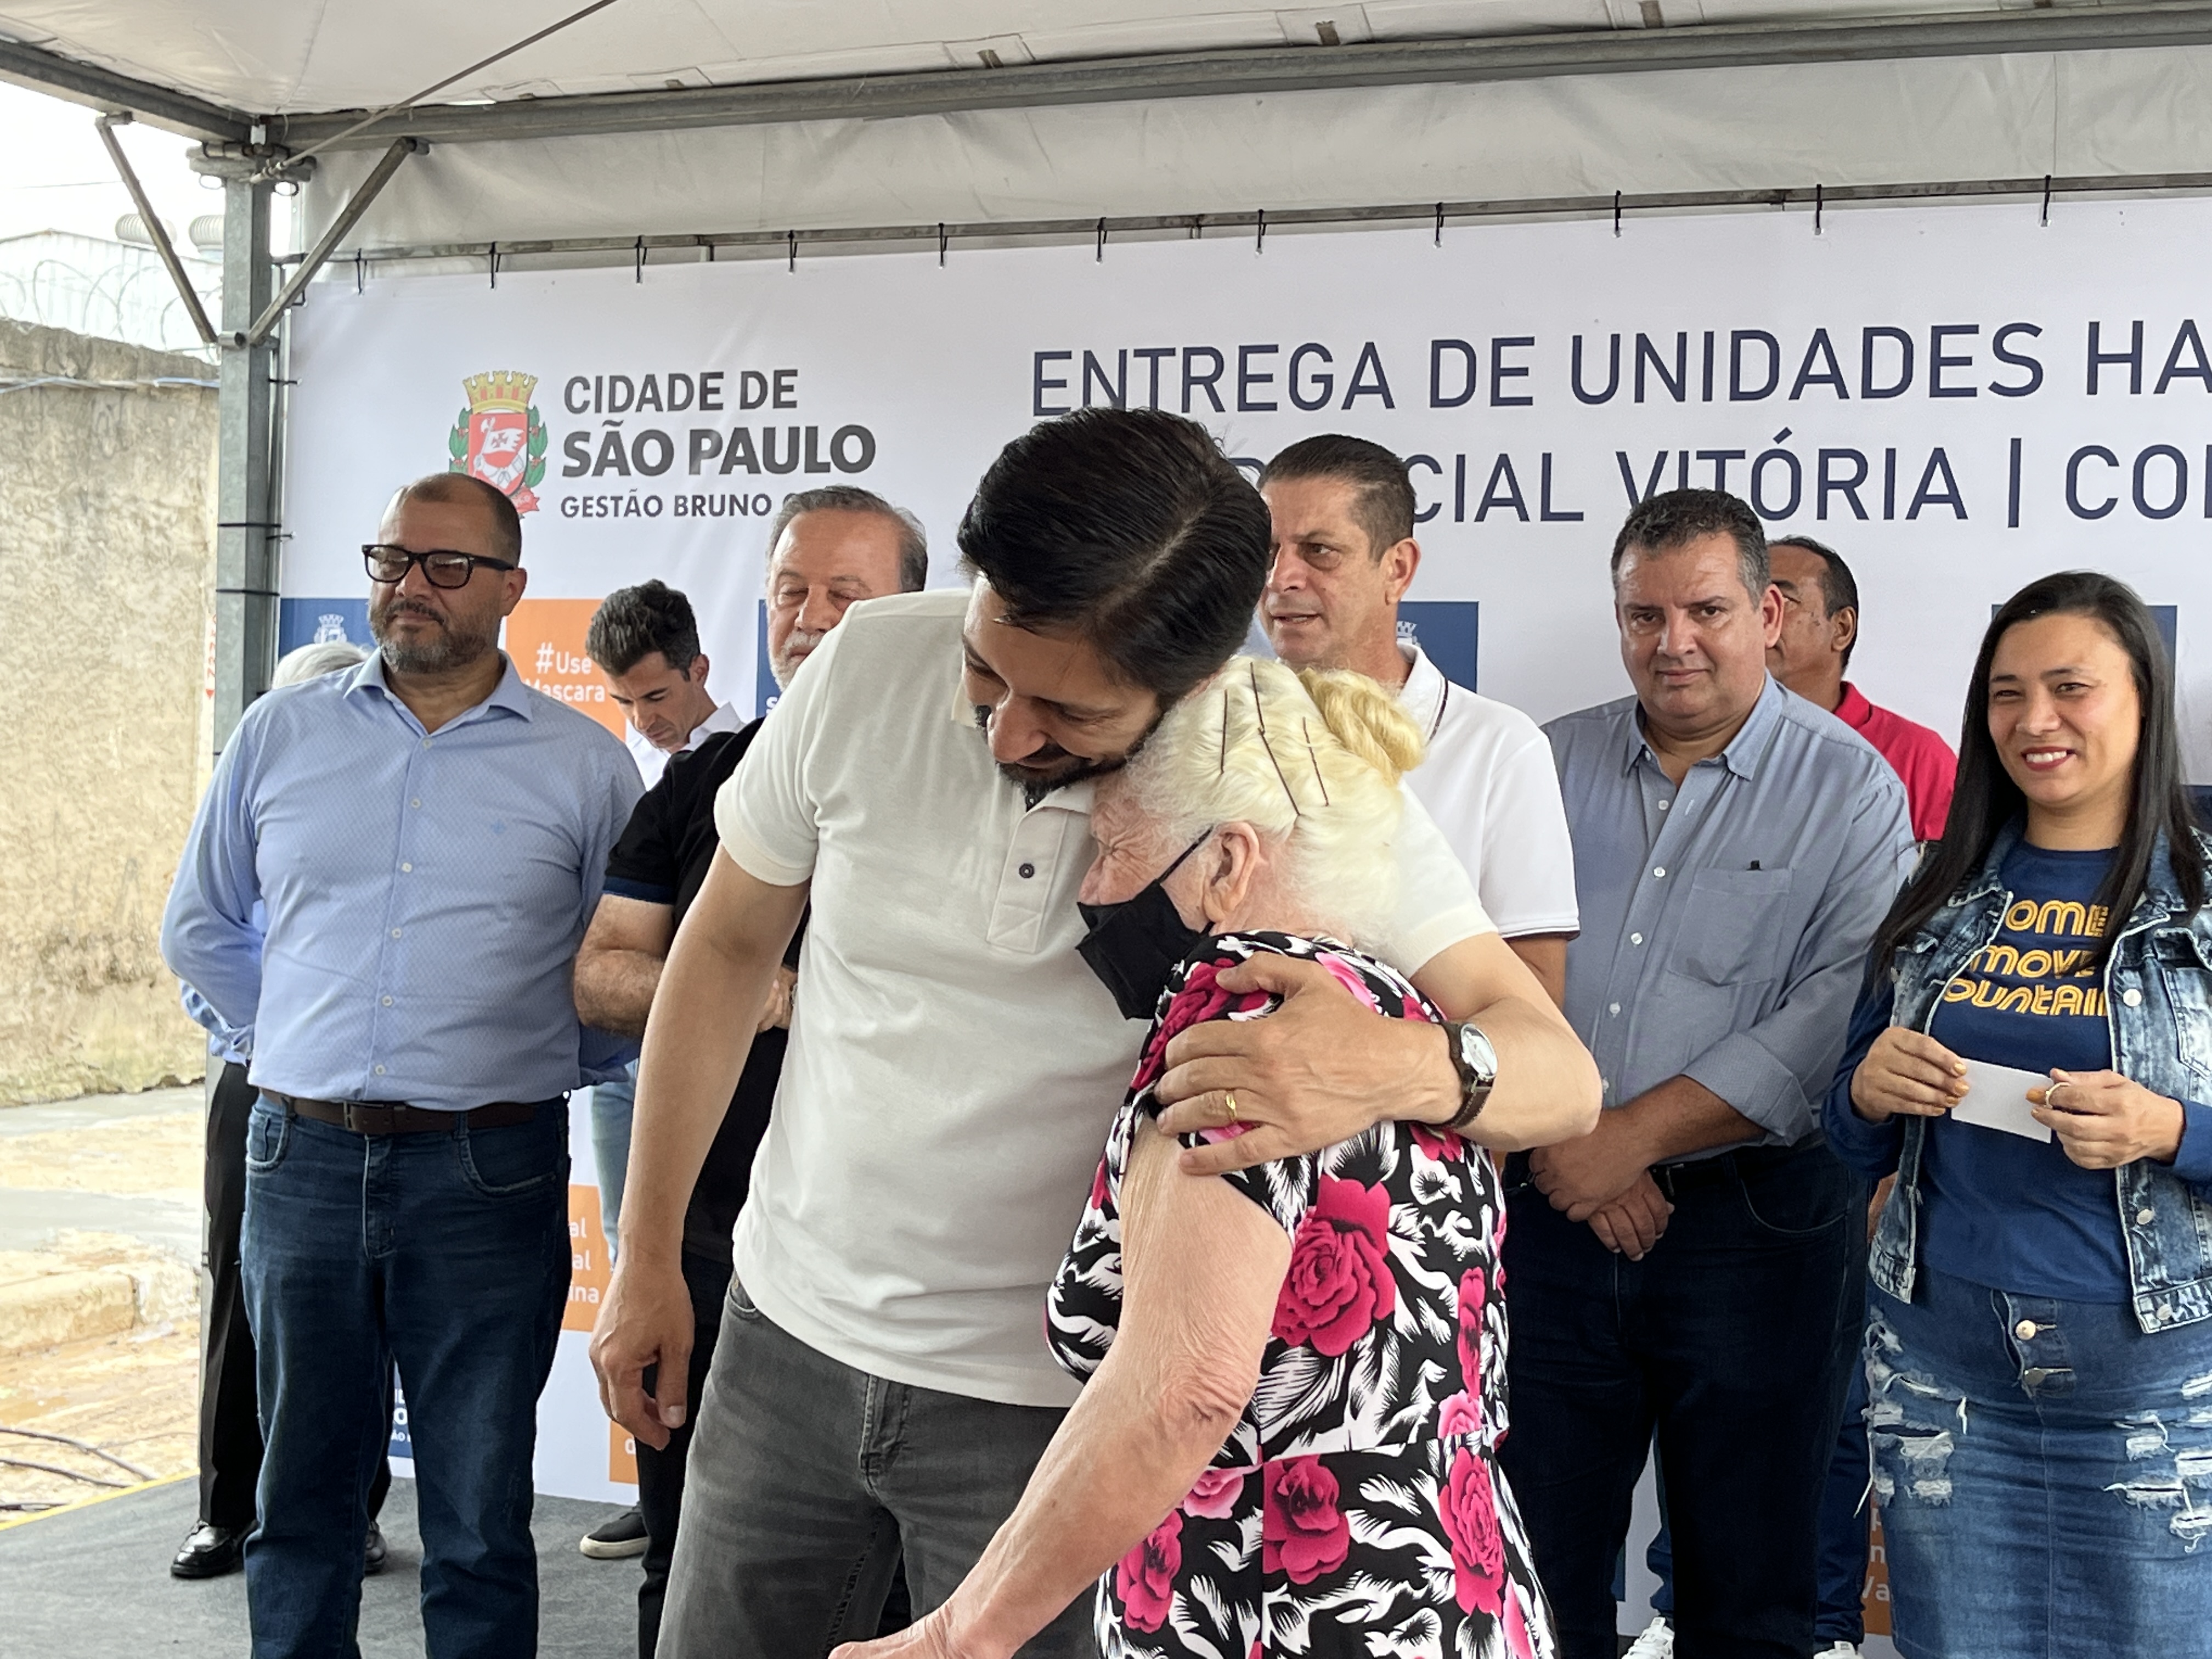 FOTO 02: Em primeiro plano, Prefeito Ricardo Nunes abraça senhora, em cima do palco do evento, em segundo plano o Secretário Municipal de Habitação João Farias